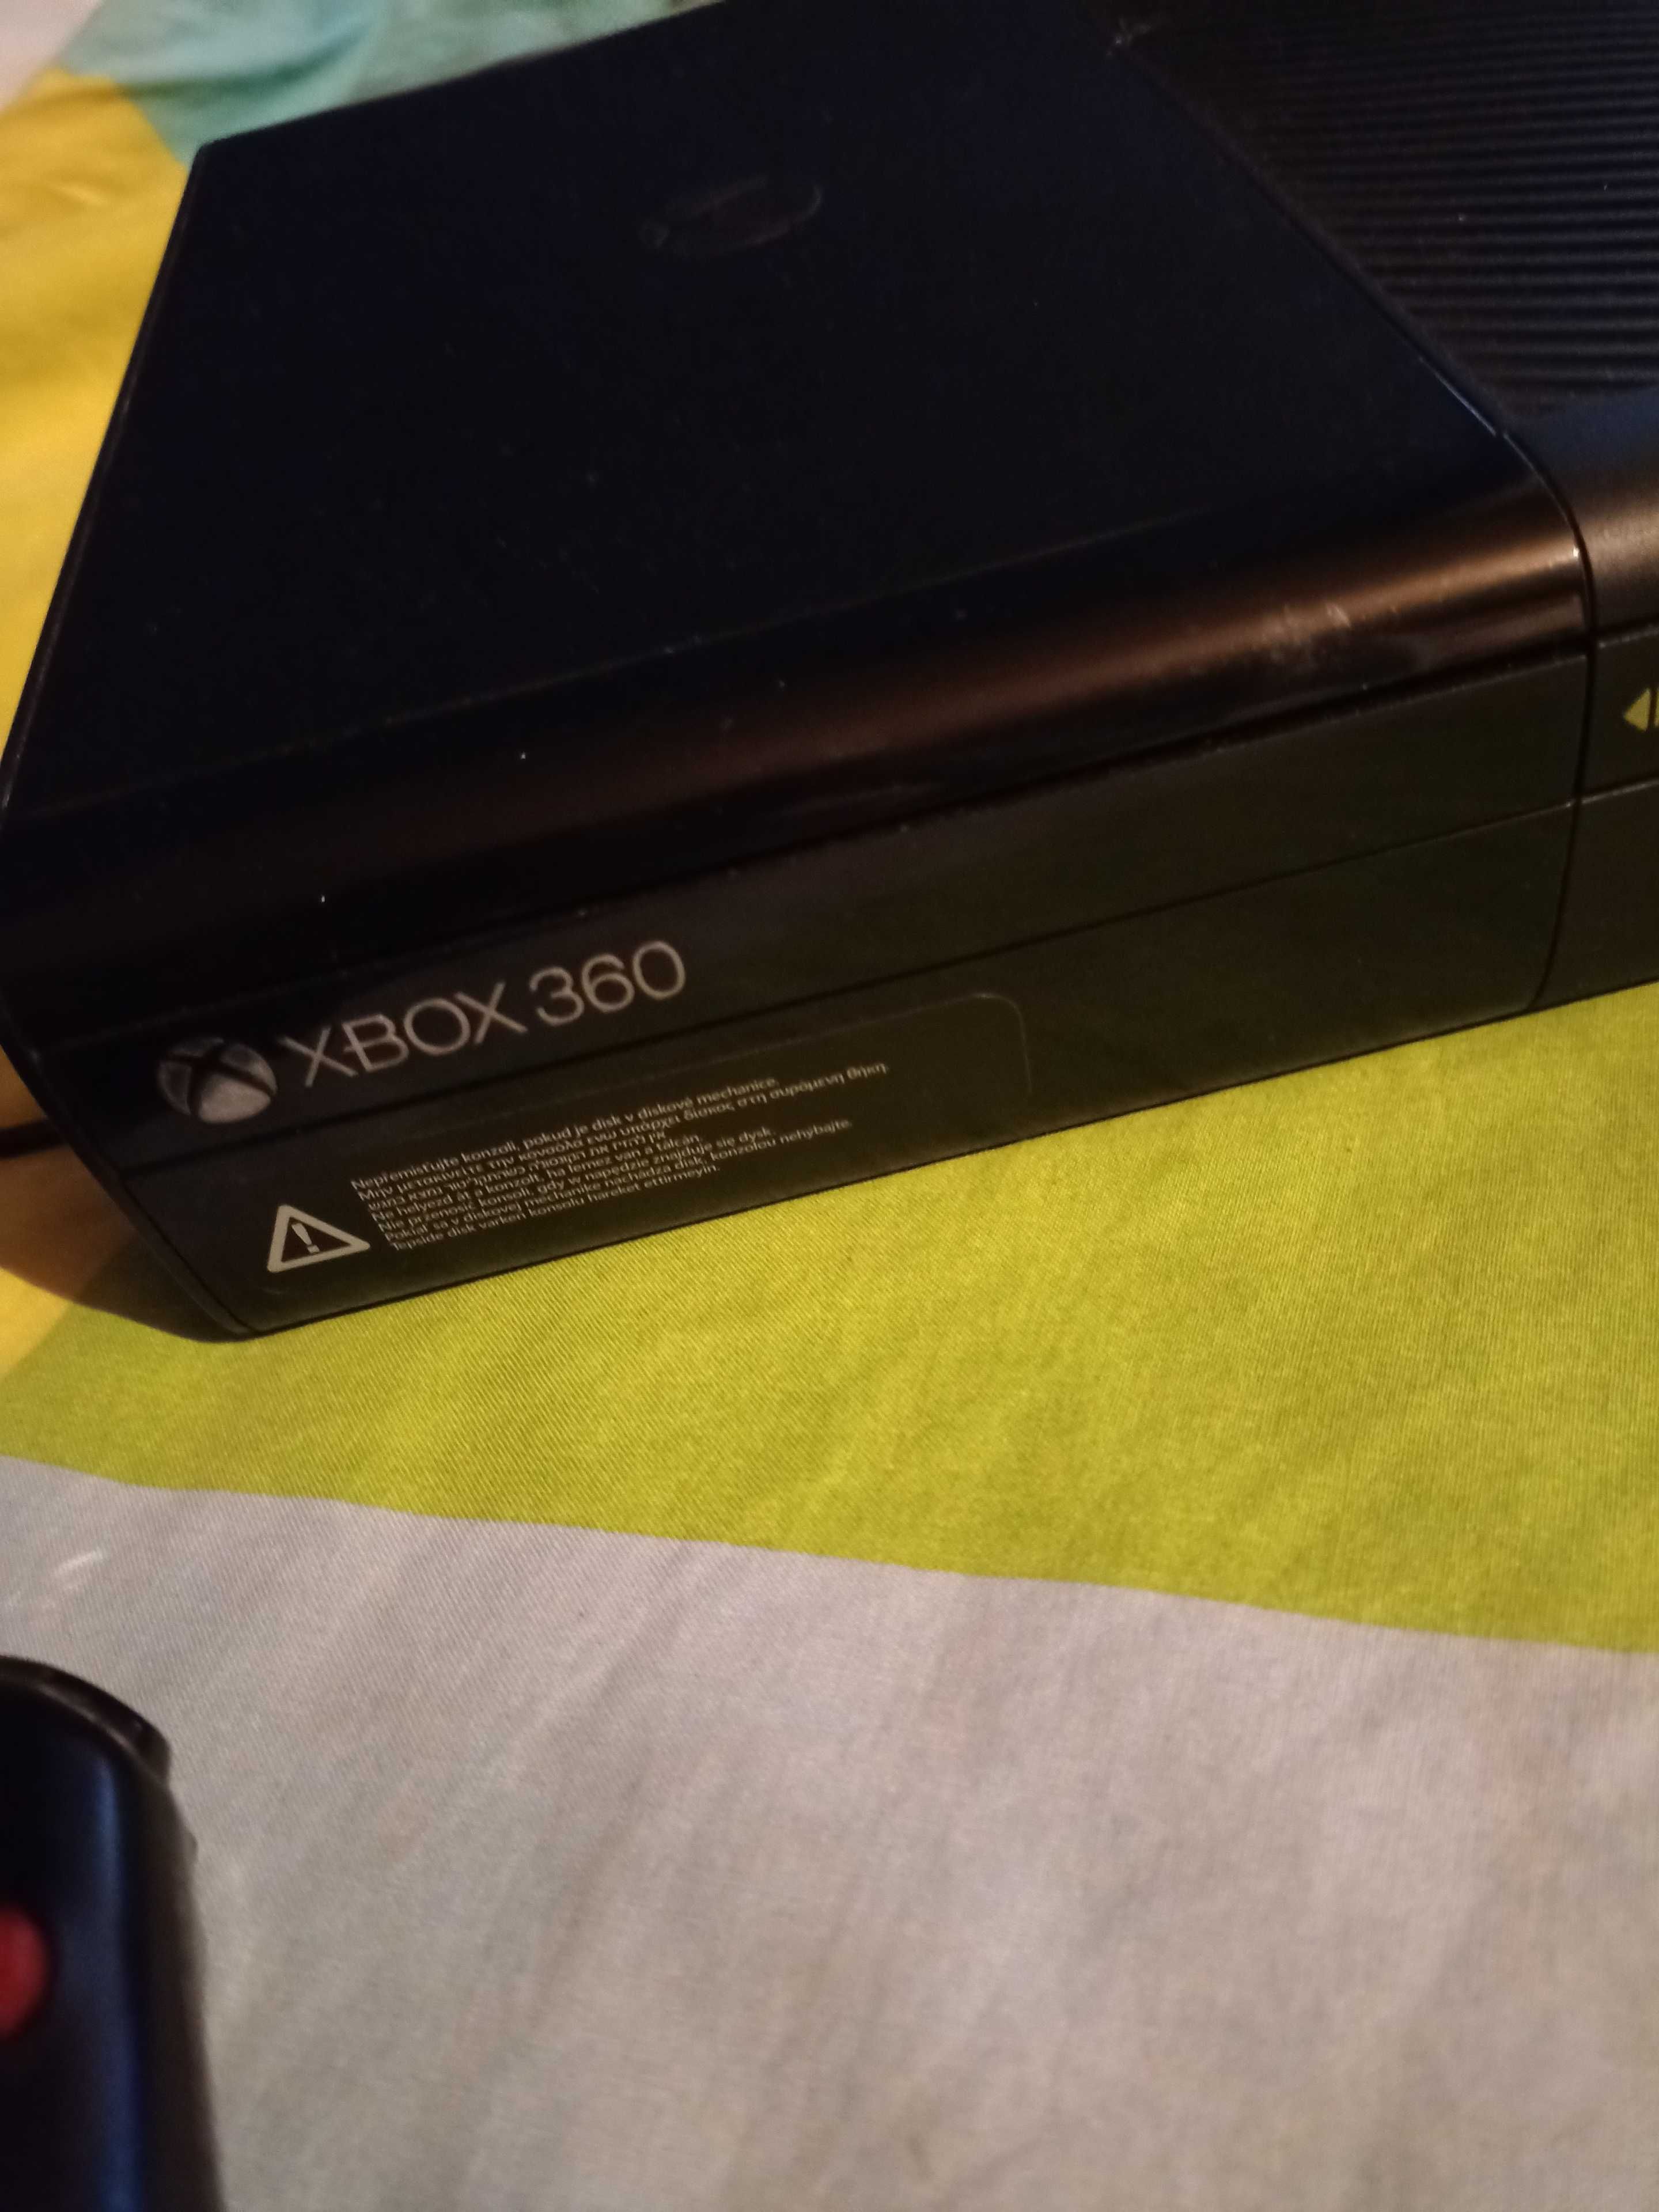 Konsola Xbox 360 nowsza oryg pad gry gwarancja